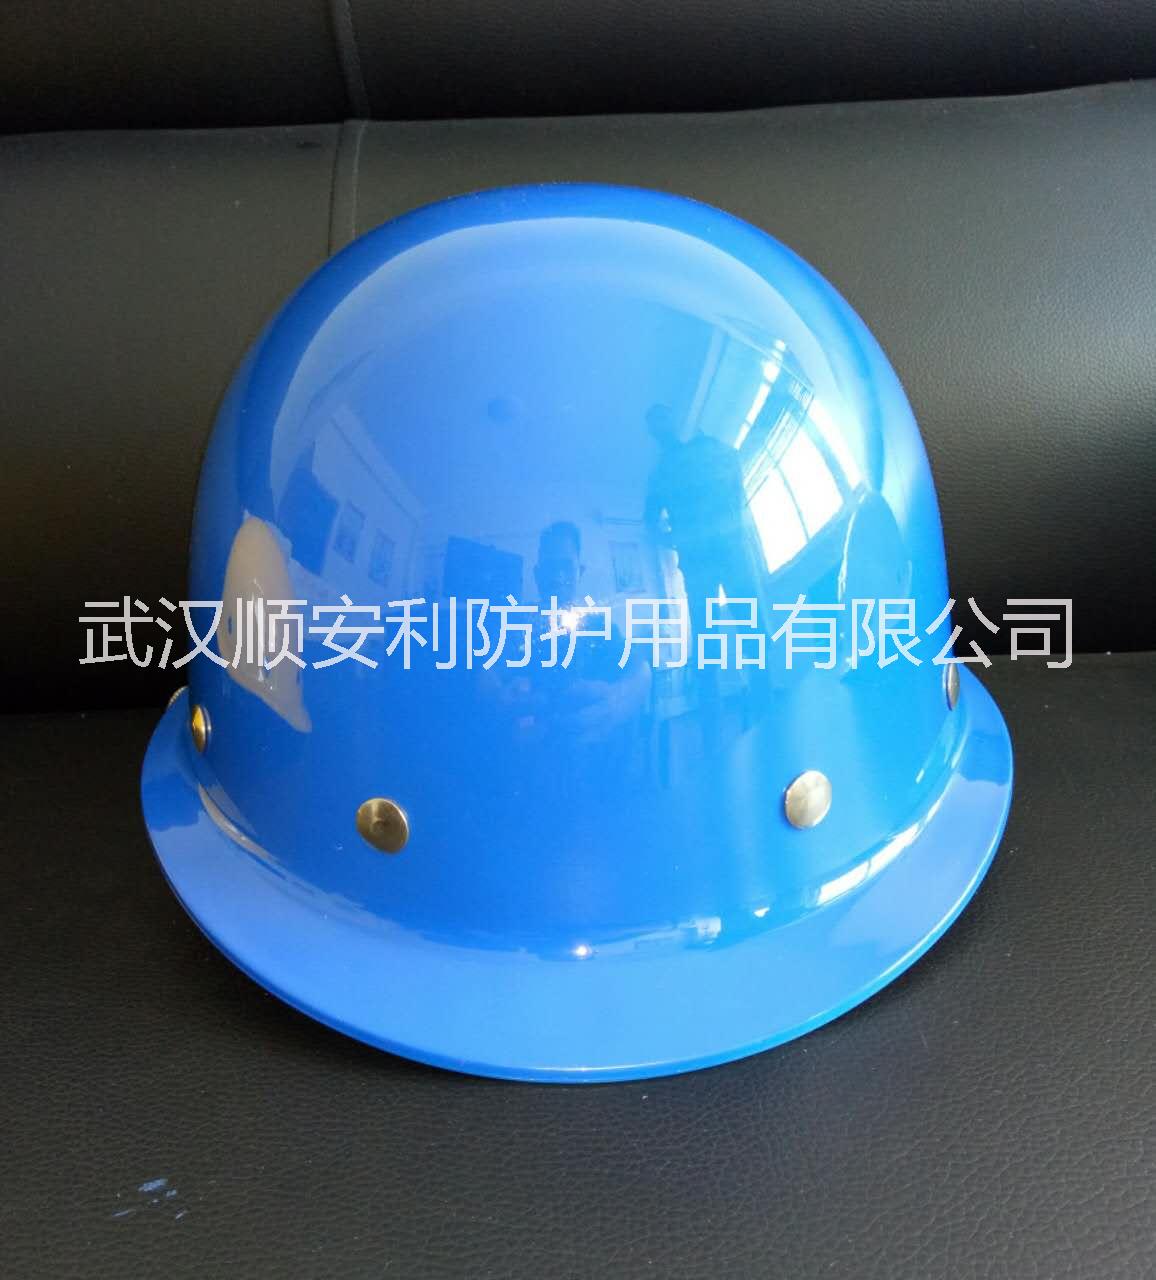 武汉玻璃钢安全帽圆形玻璃钢安全帽工地防护帽价格铆钉玻璃钢安全帽